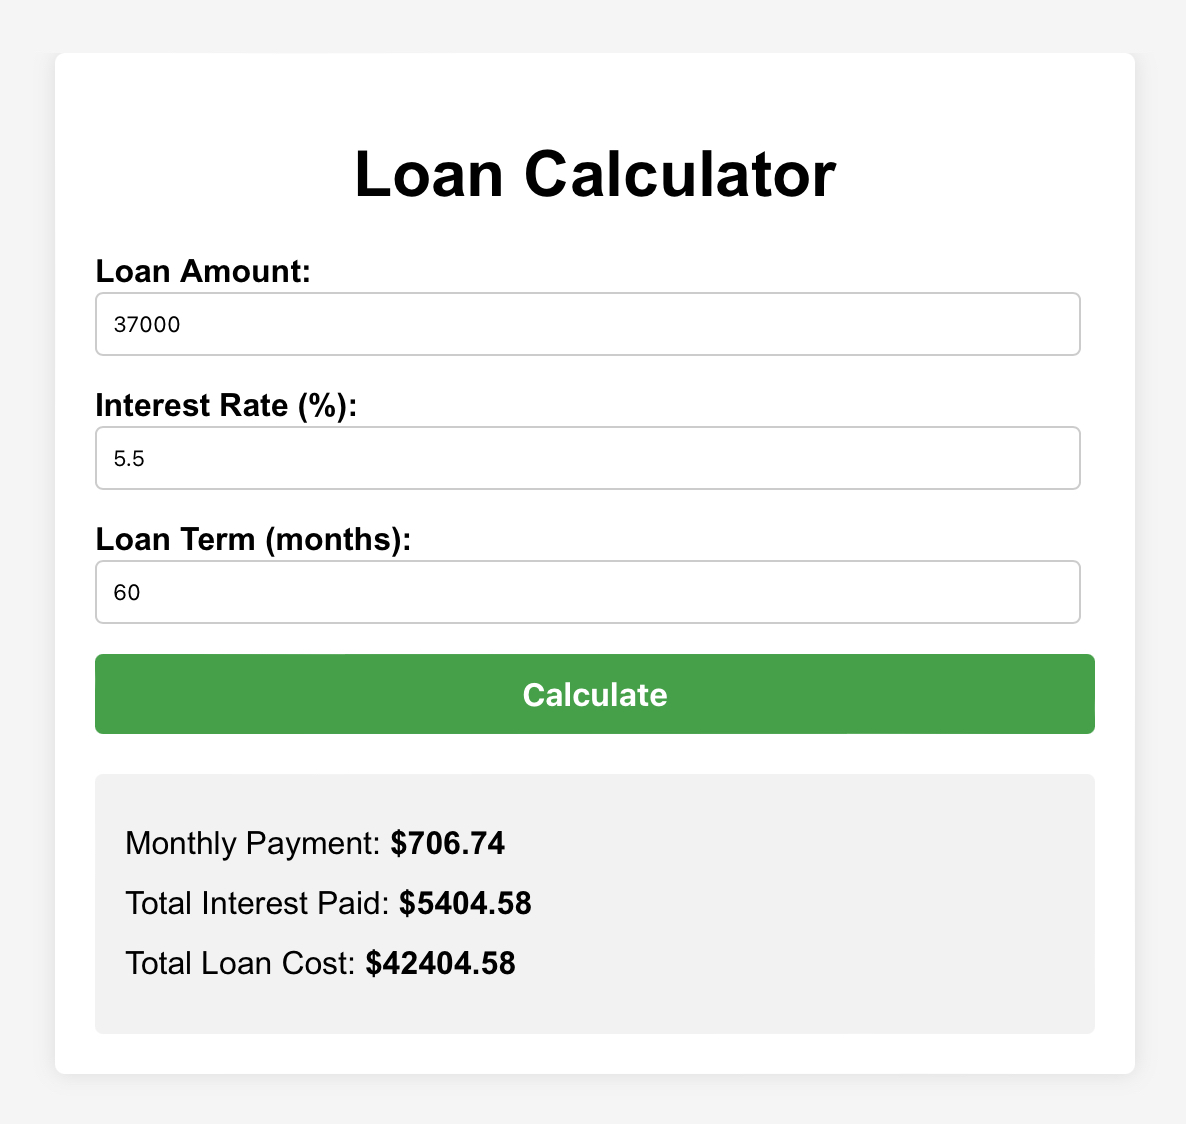 Interactive Loan Calculator